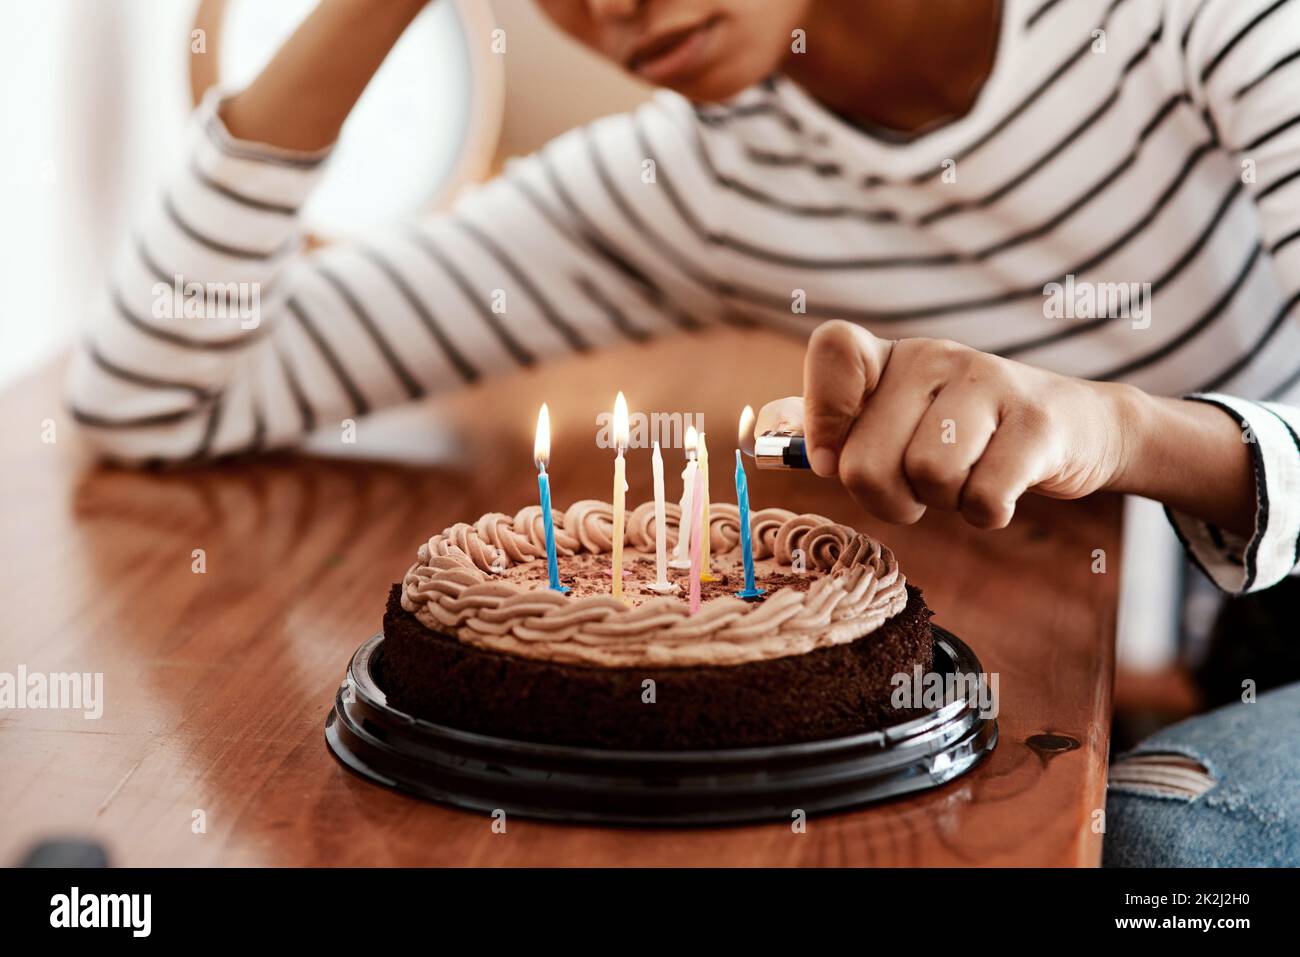 Geburtstage in quarantine...not cool. Ein kurzer Schuss einer Frau, die zu Hause Kerzen auf einem Geburtstagskuchen anzündet und traurig aussieht. Stockfoto